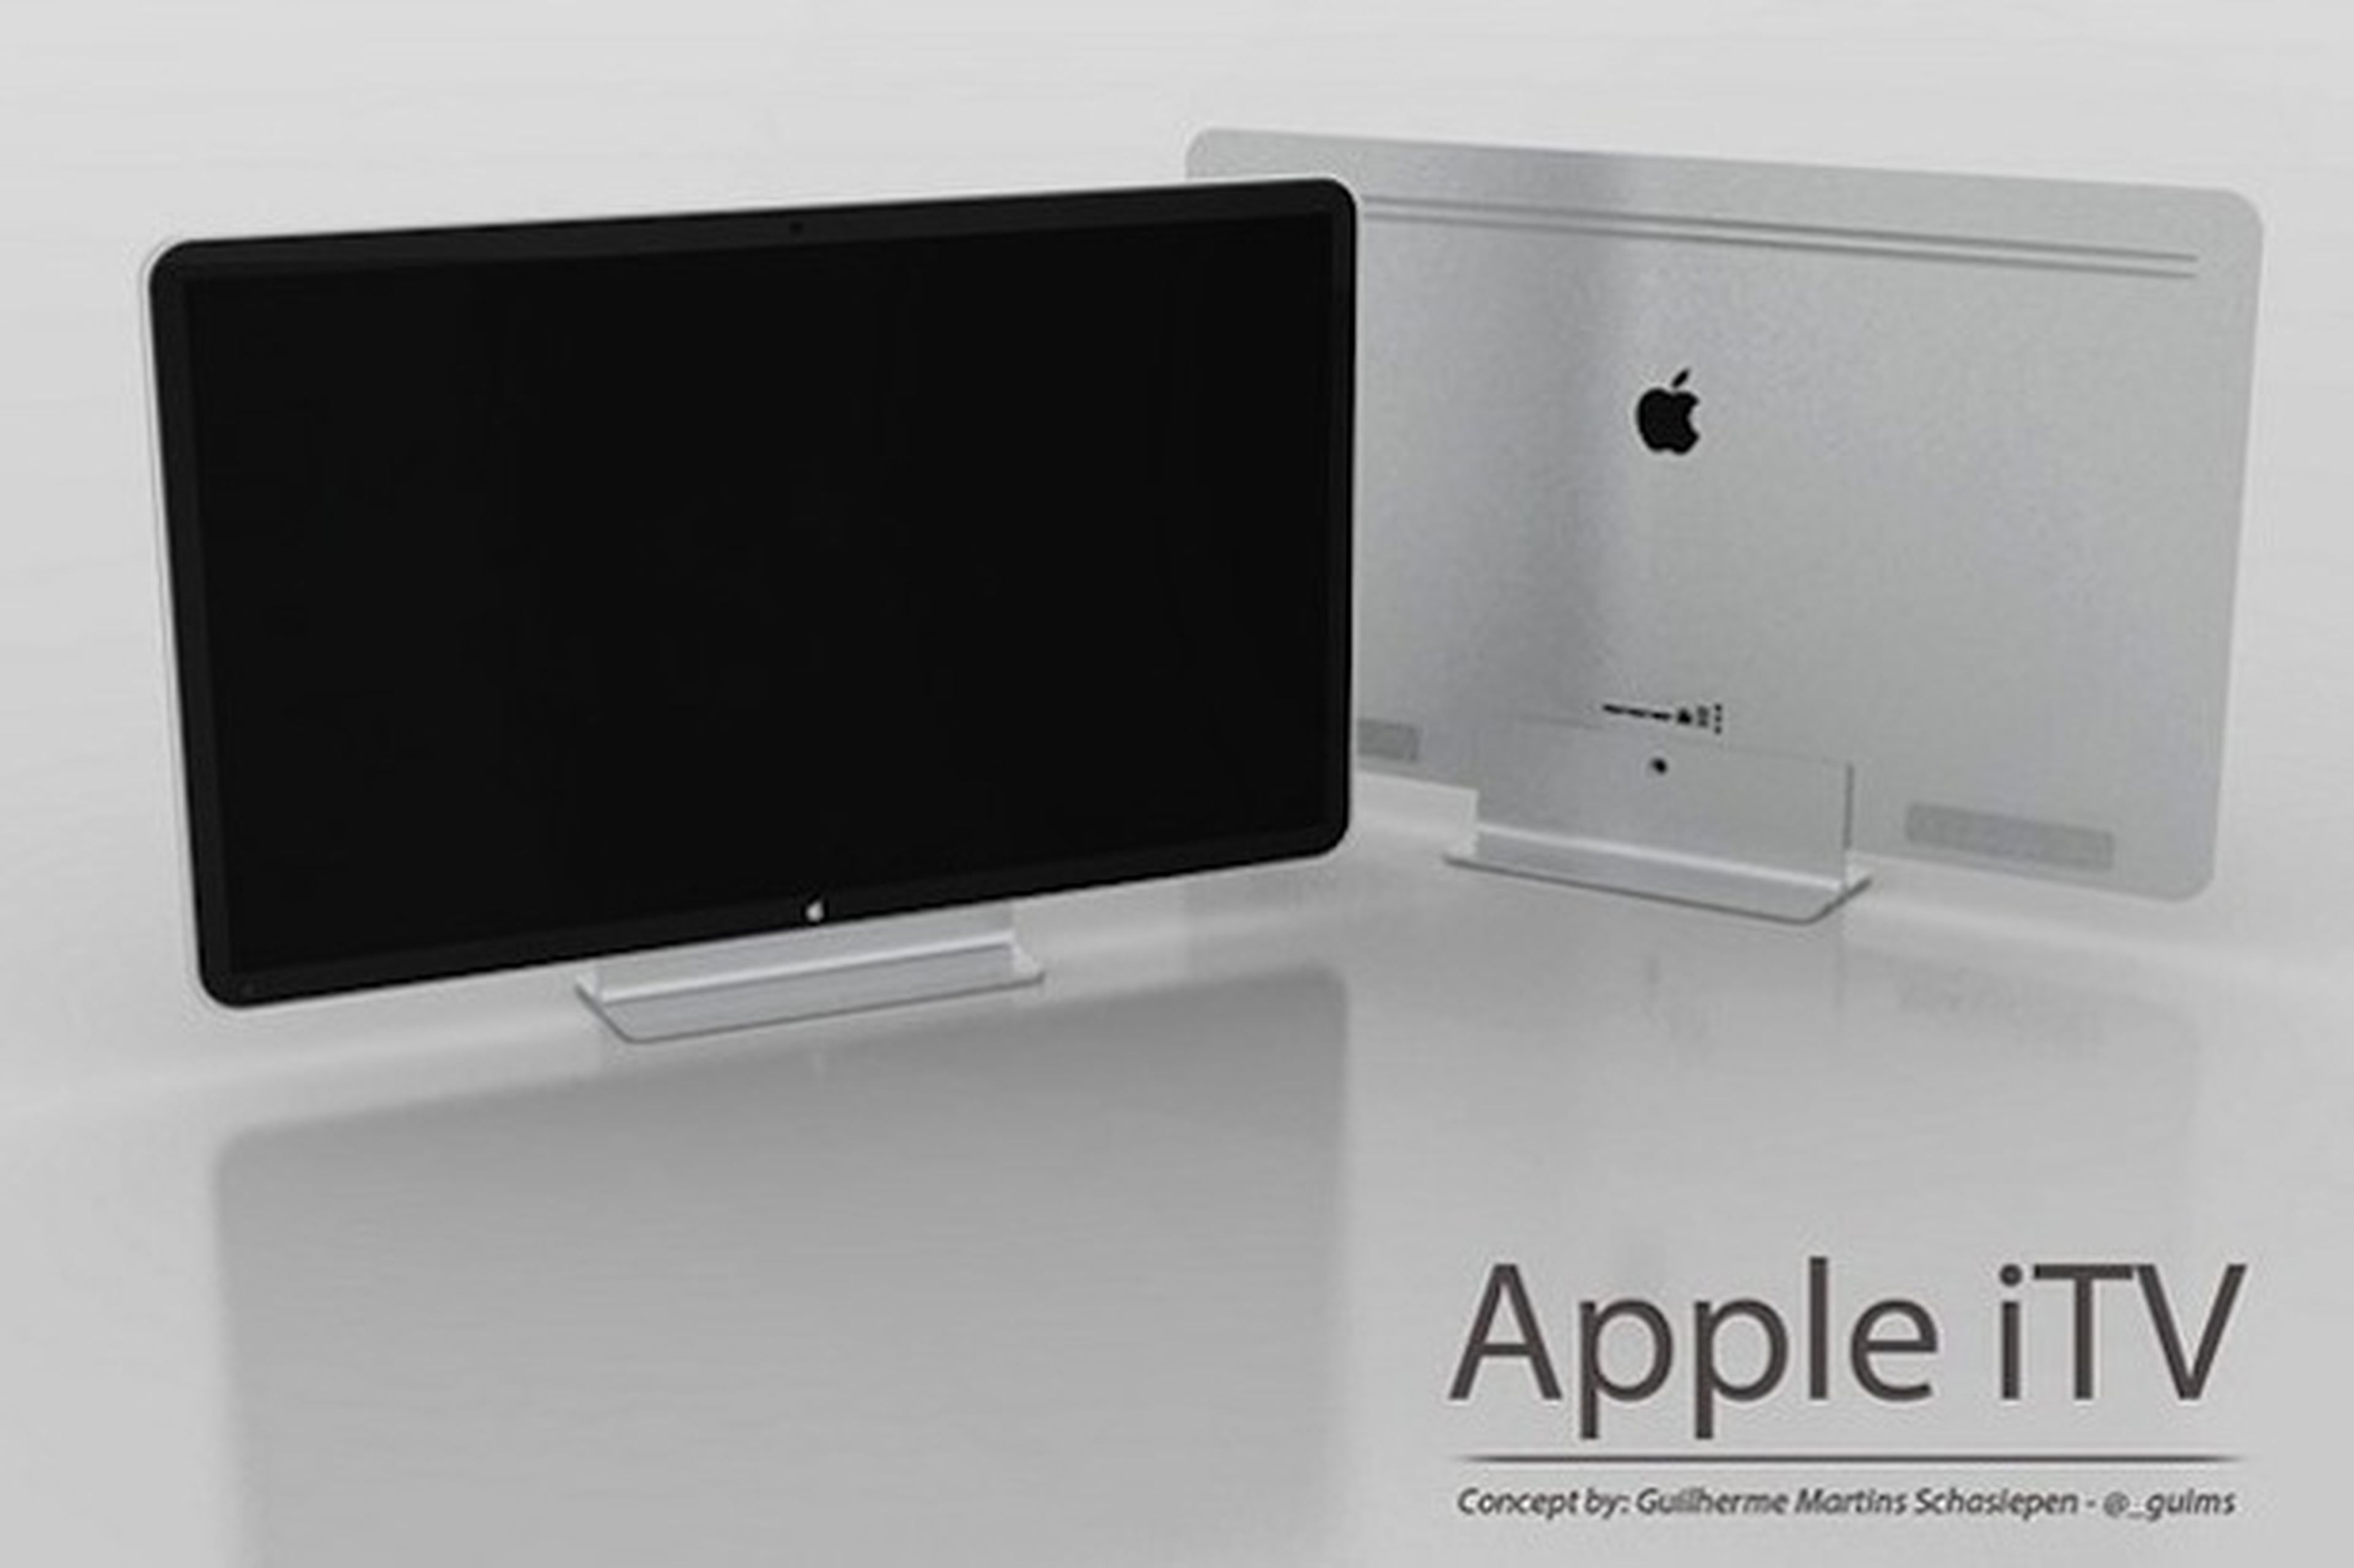 Diseño concepto para el Apple iTV